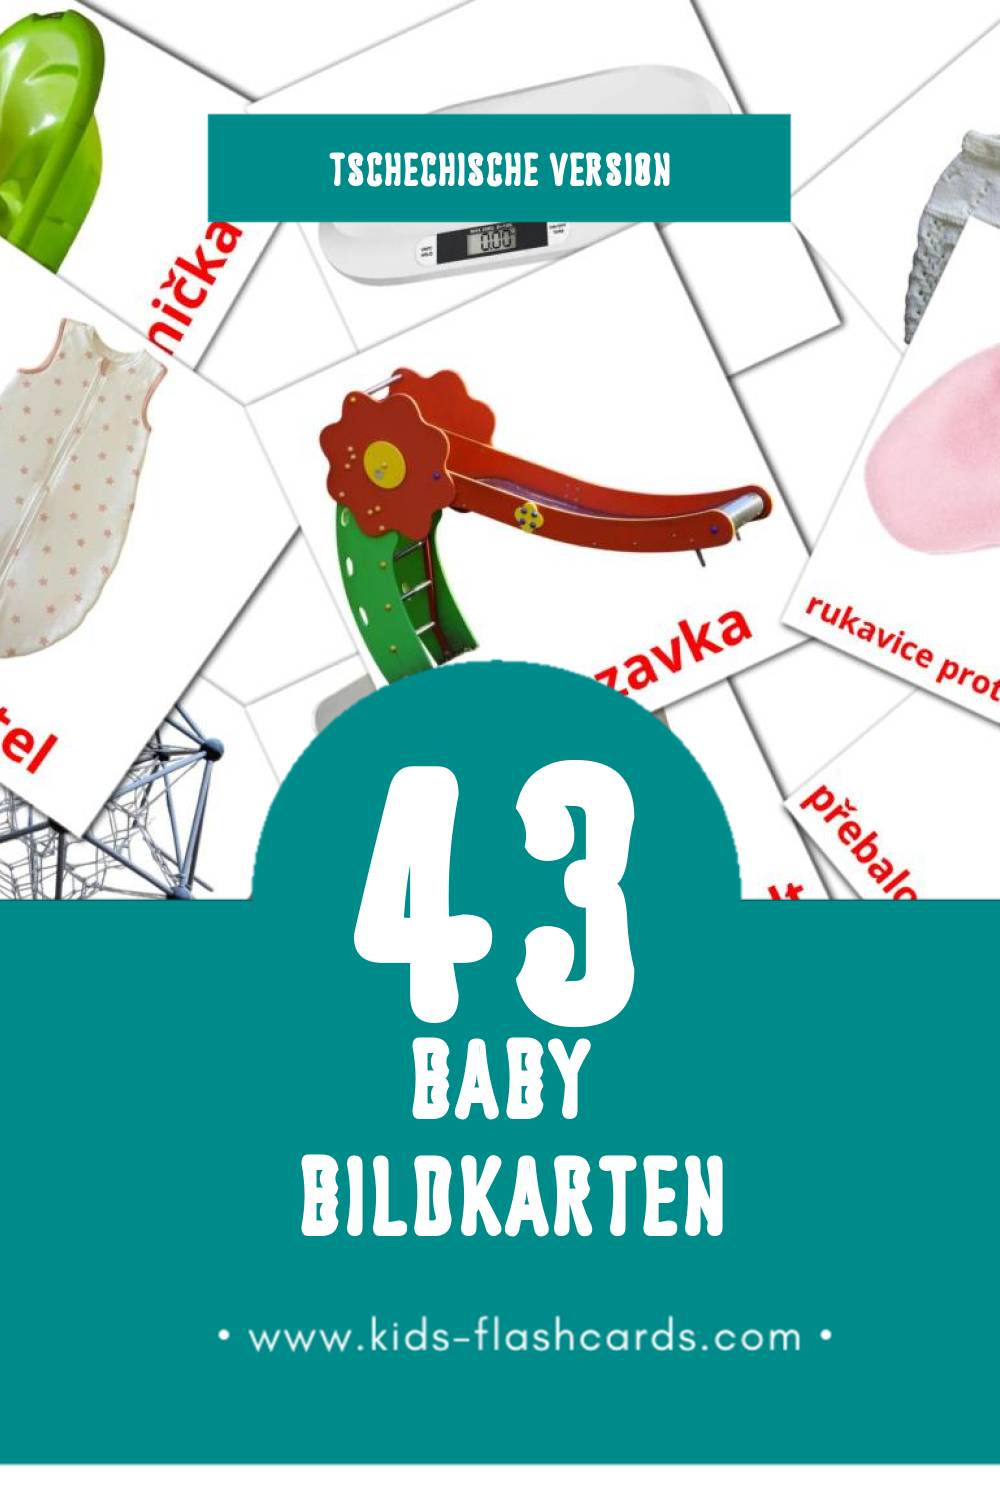 Visual Dítě Flashcards für Kleinkinder (43 Karten in Tschechisch)